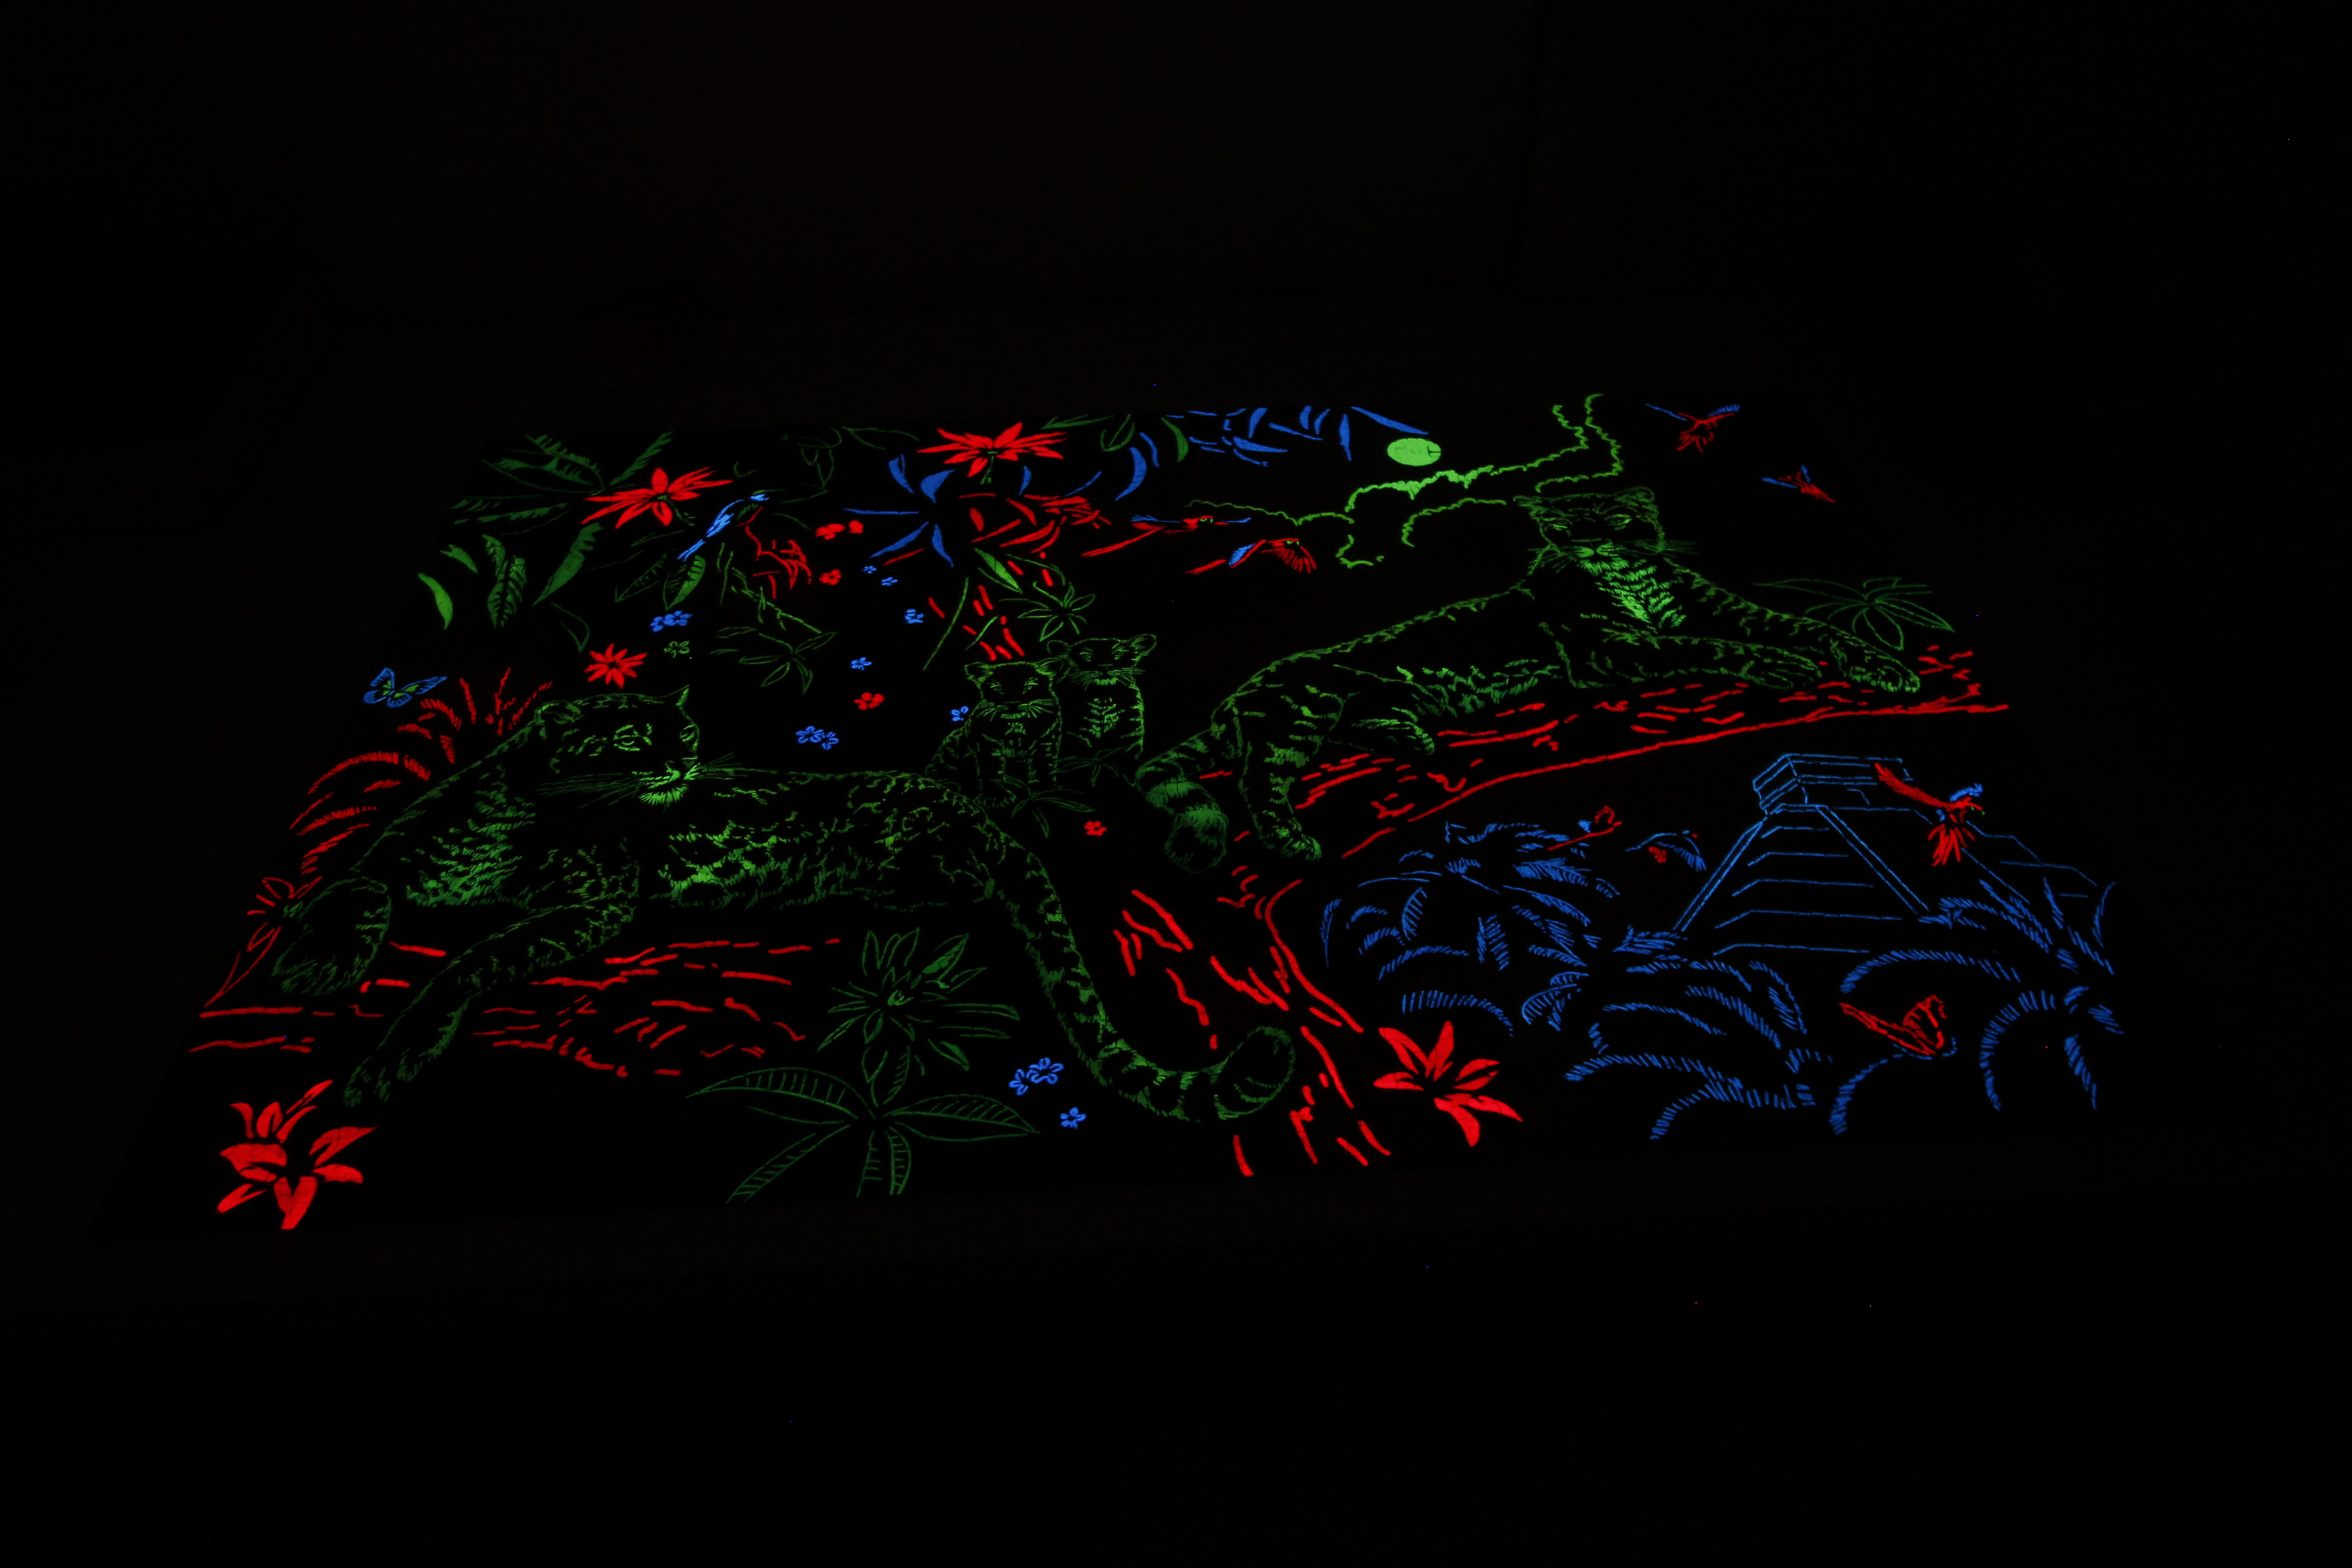 Puzzle mit Leuchtfarbe bei dunkler Umgebung mit langer Belichtung